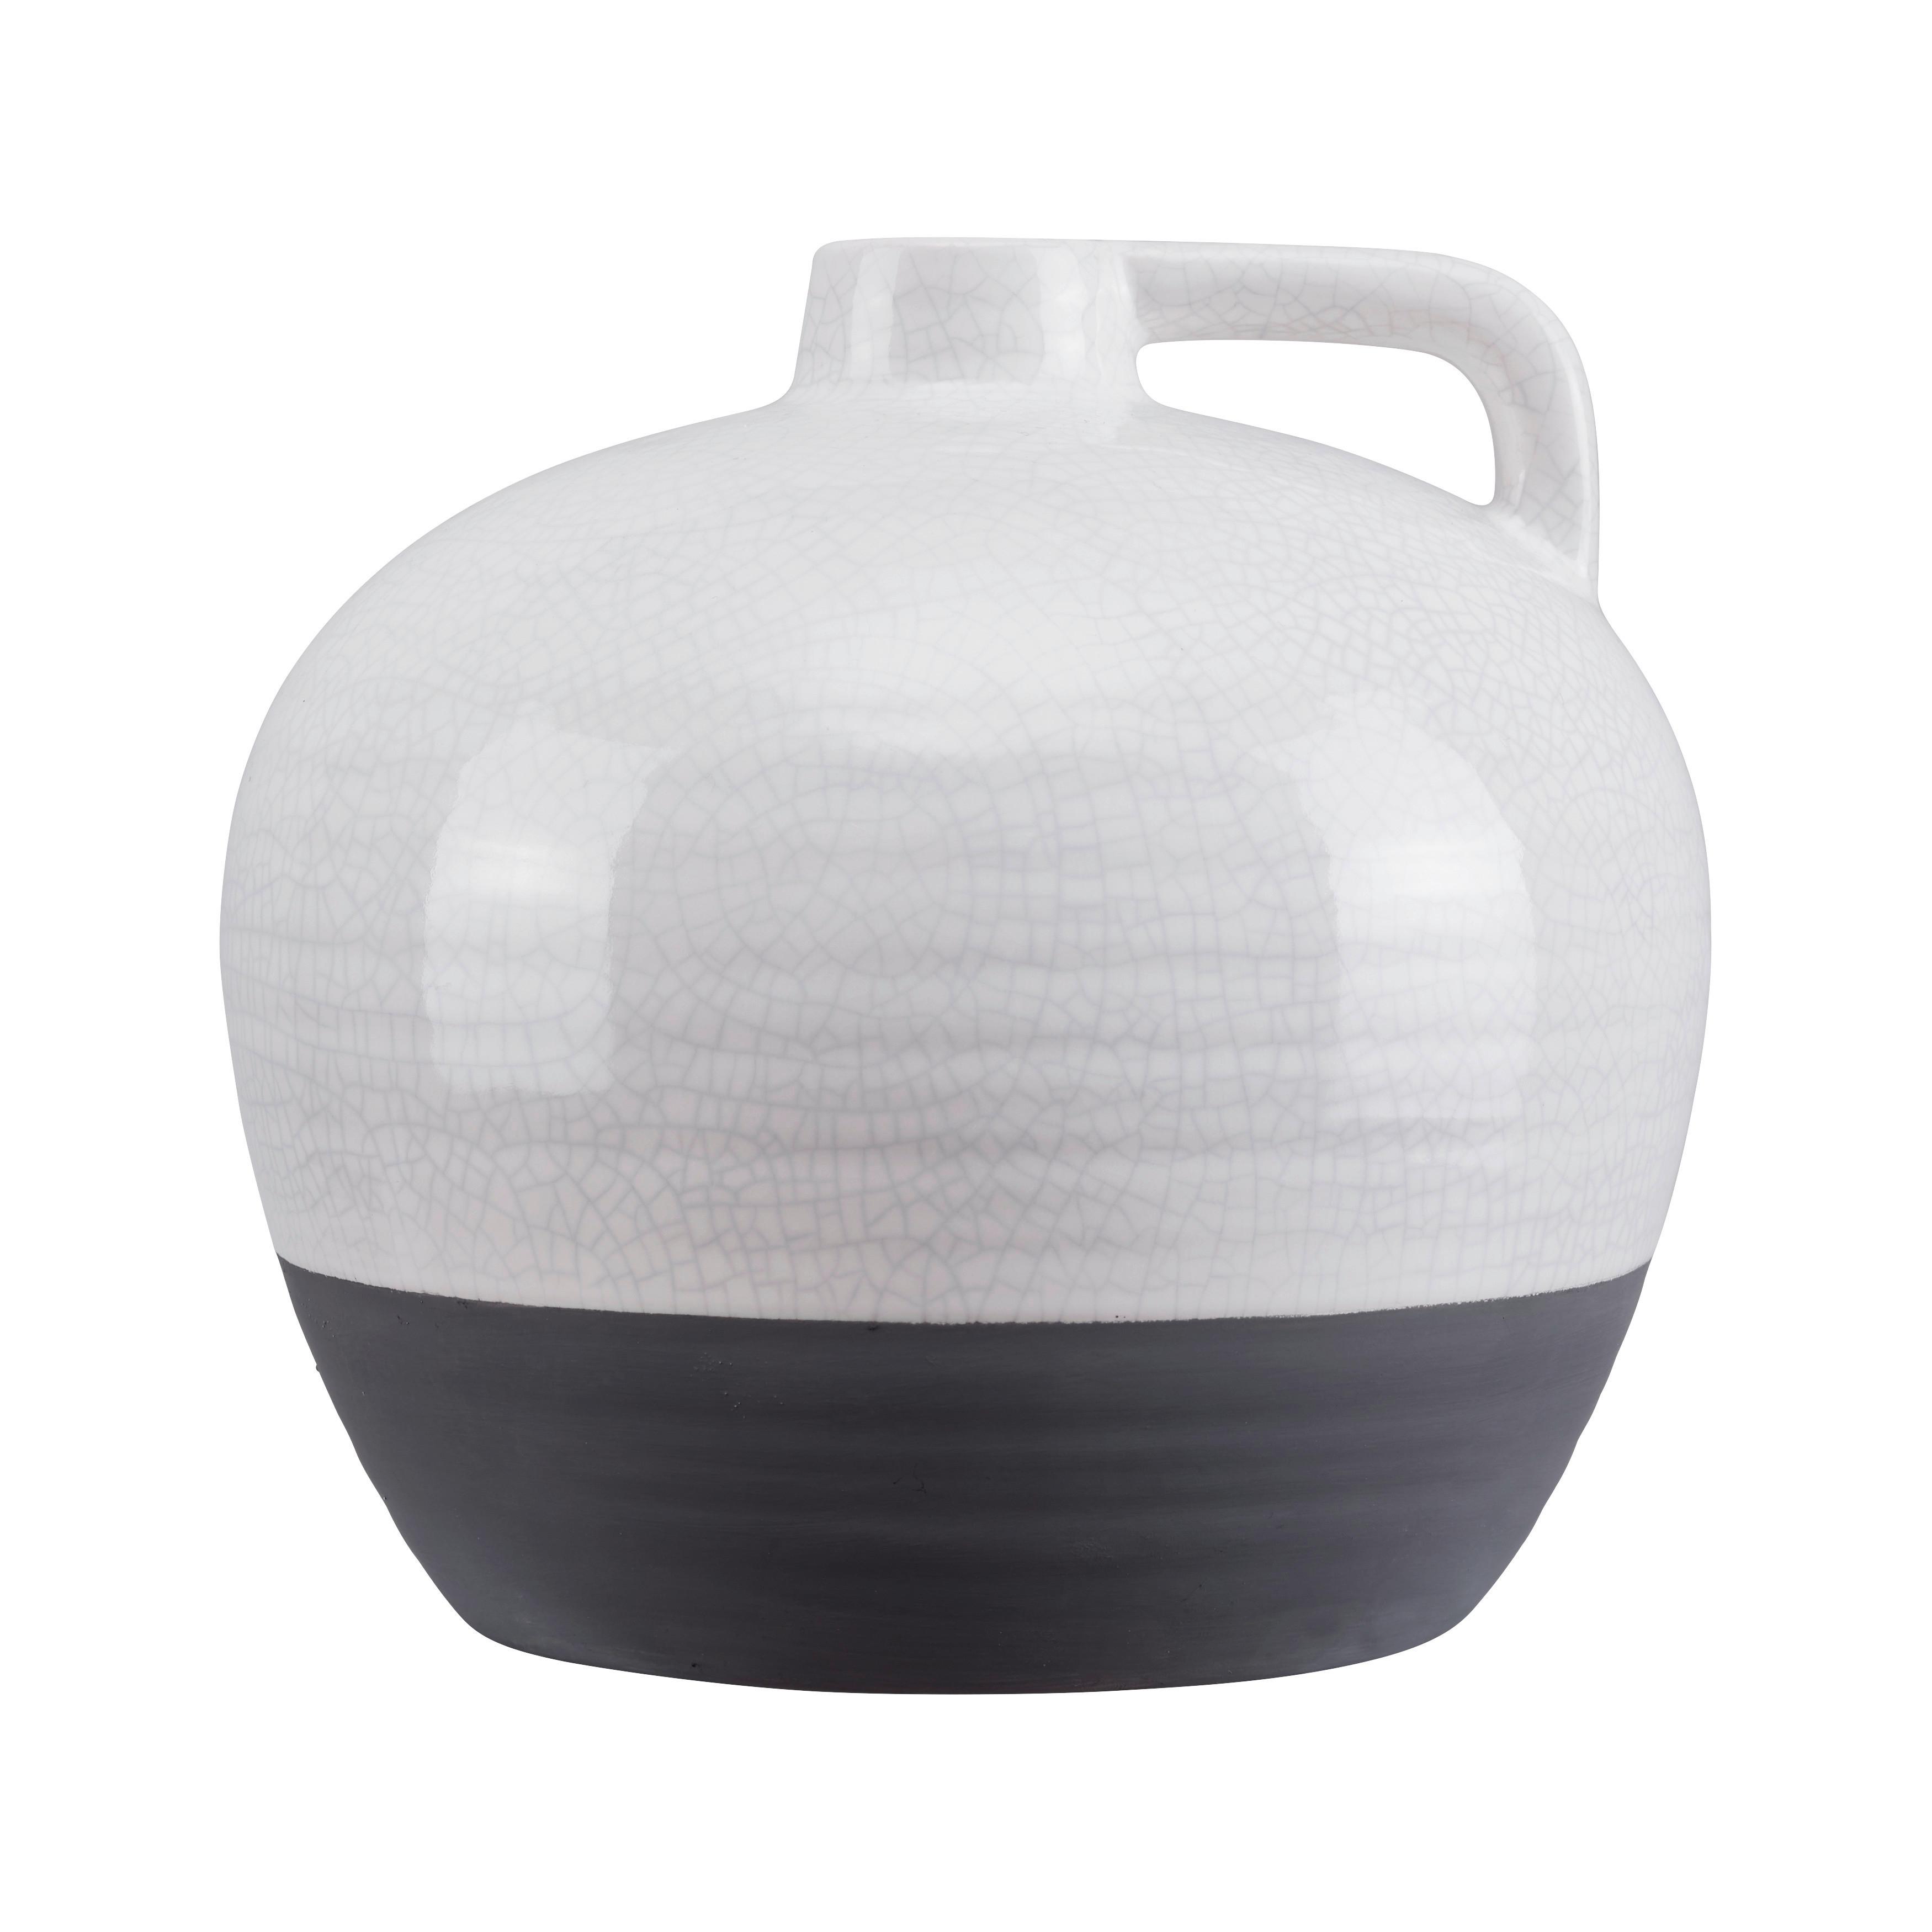 Kameninová Váza Rezzo P: 22,5 Cm - šedá/bílá, Moderní, keramika (22,5/21cm) - Bessagi Home